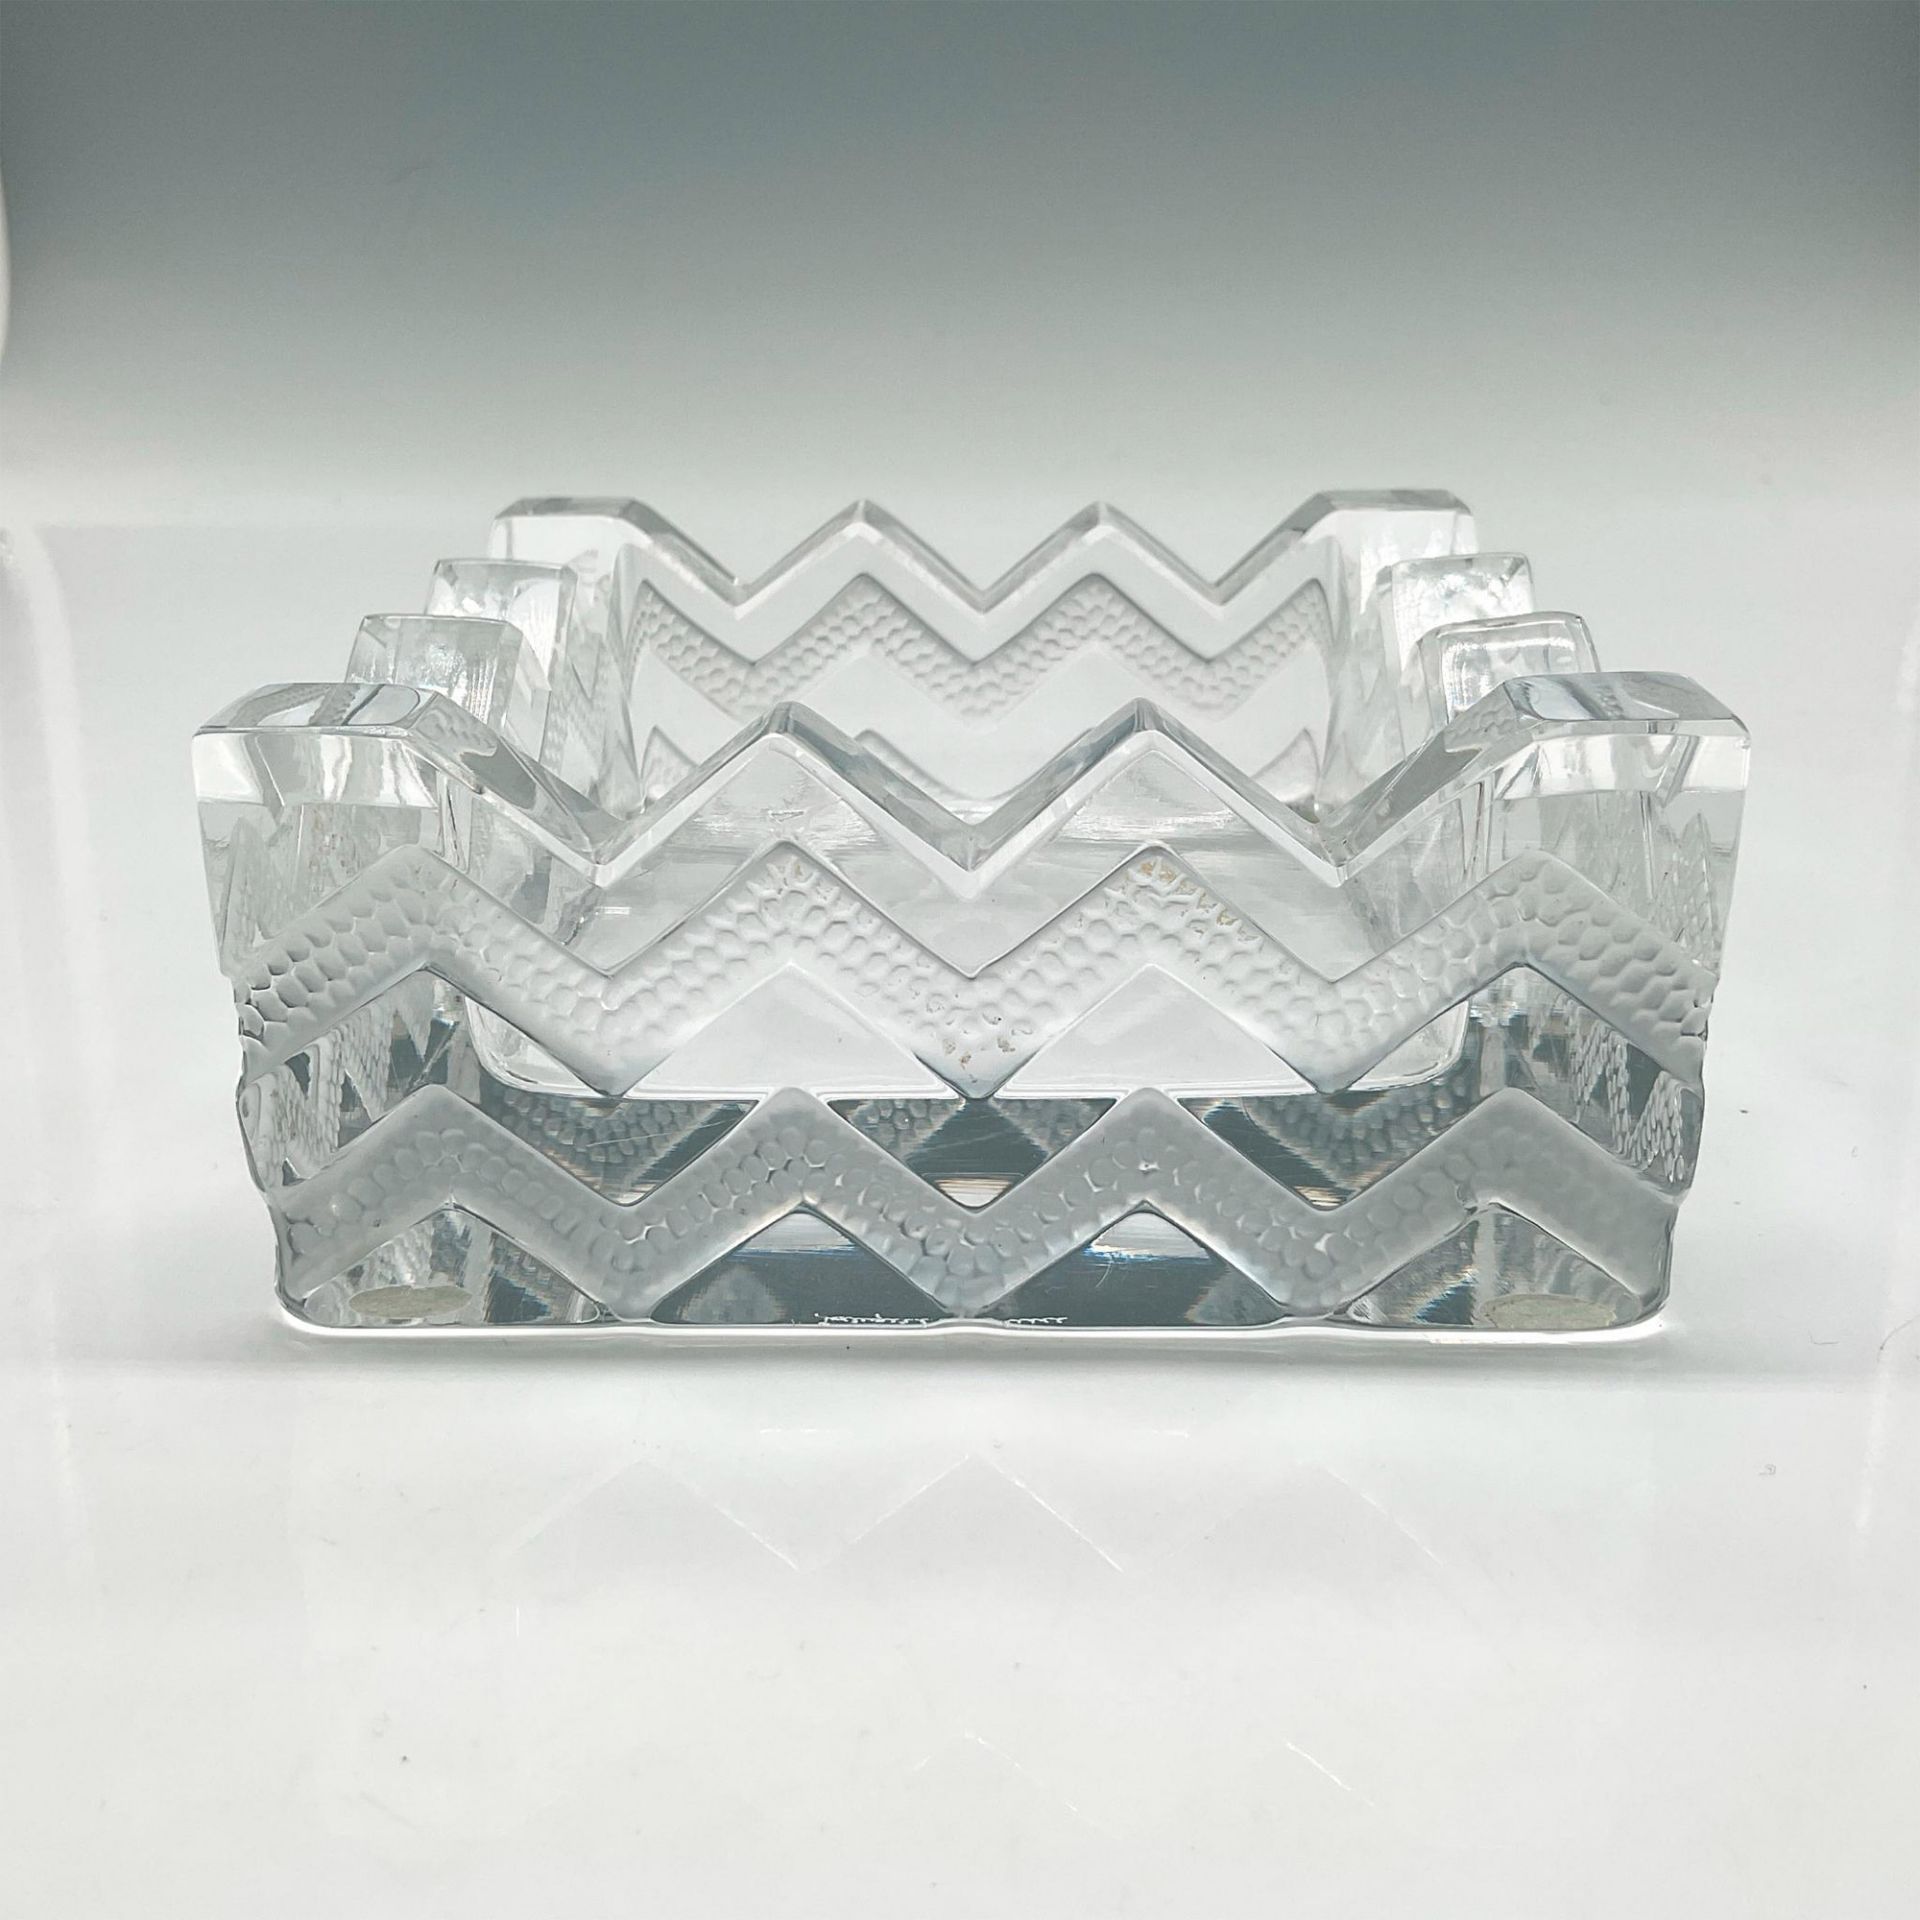 Lalique Crystal Ashtray, Soudan + Square Chevron Design - Image 2 of 4